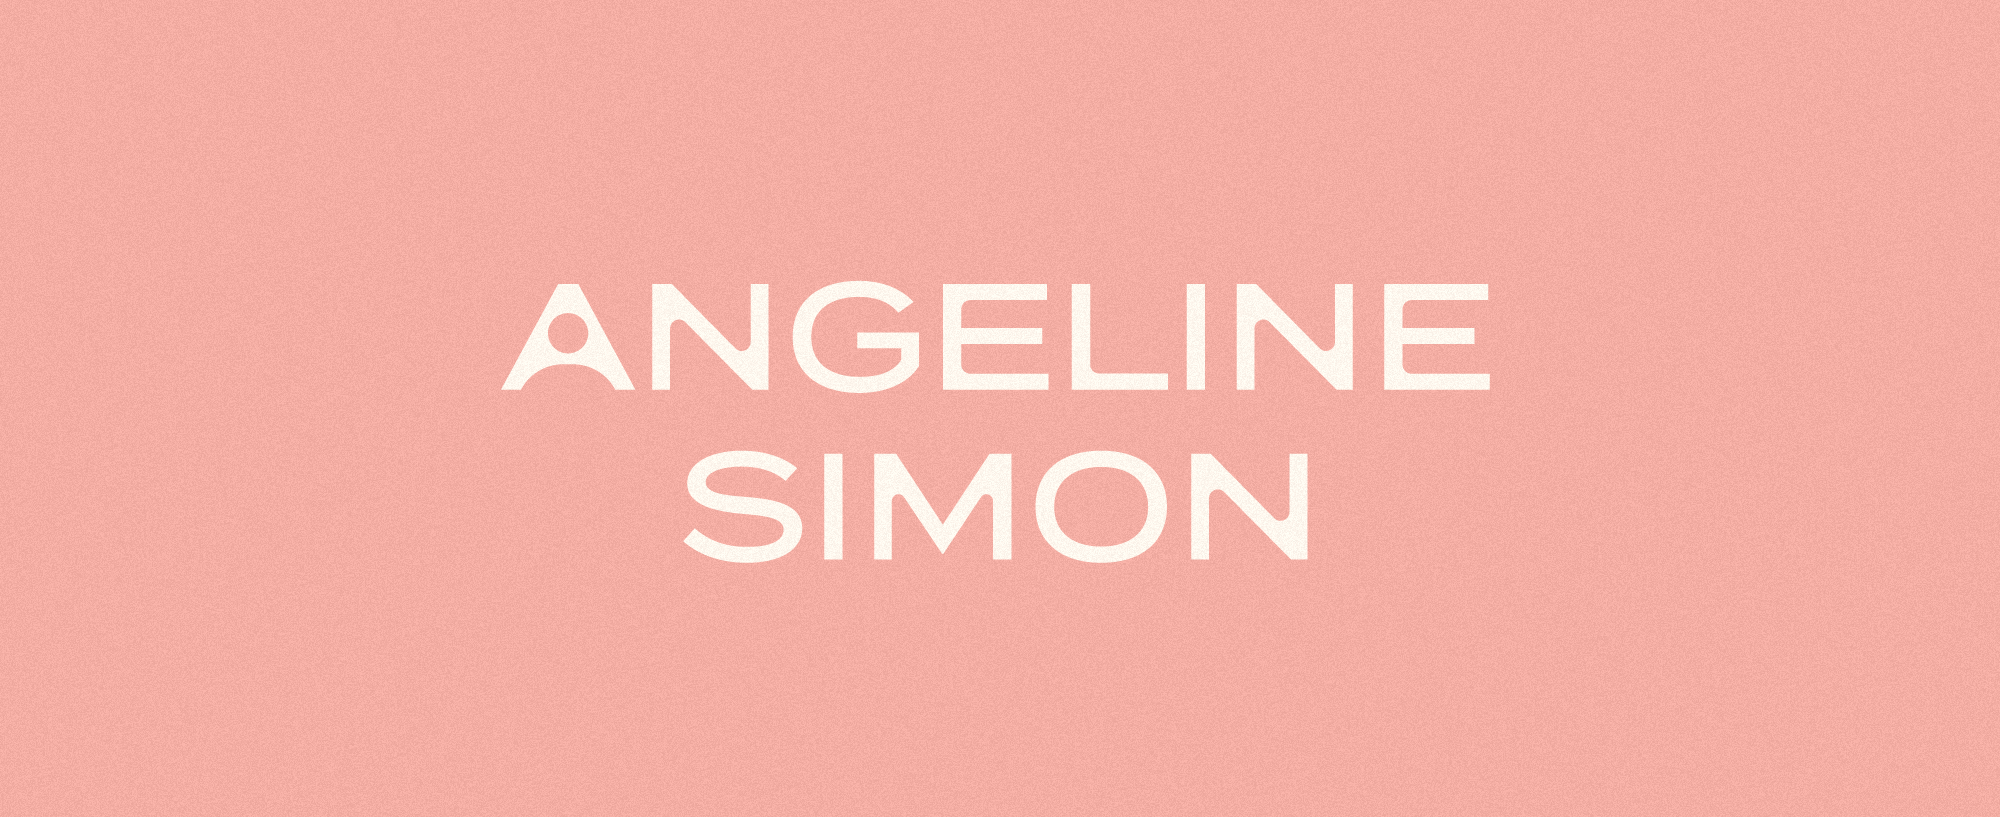 angeline-simon-wordmark-03